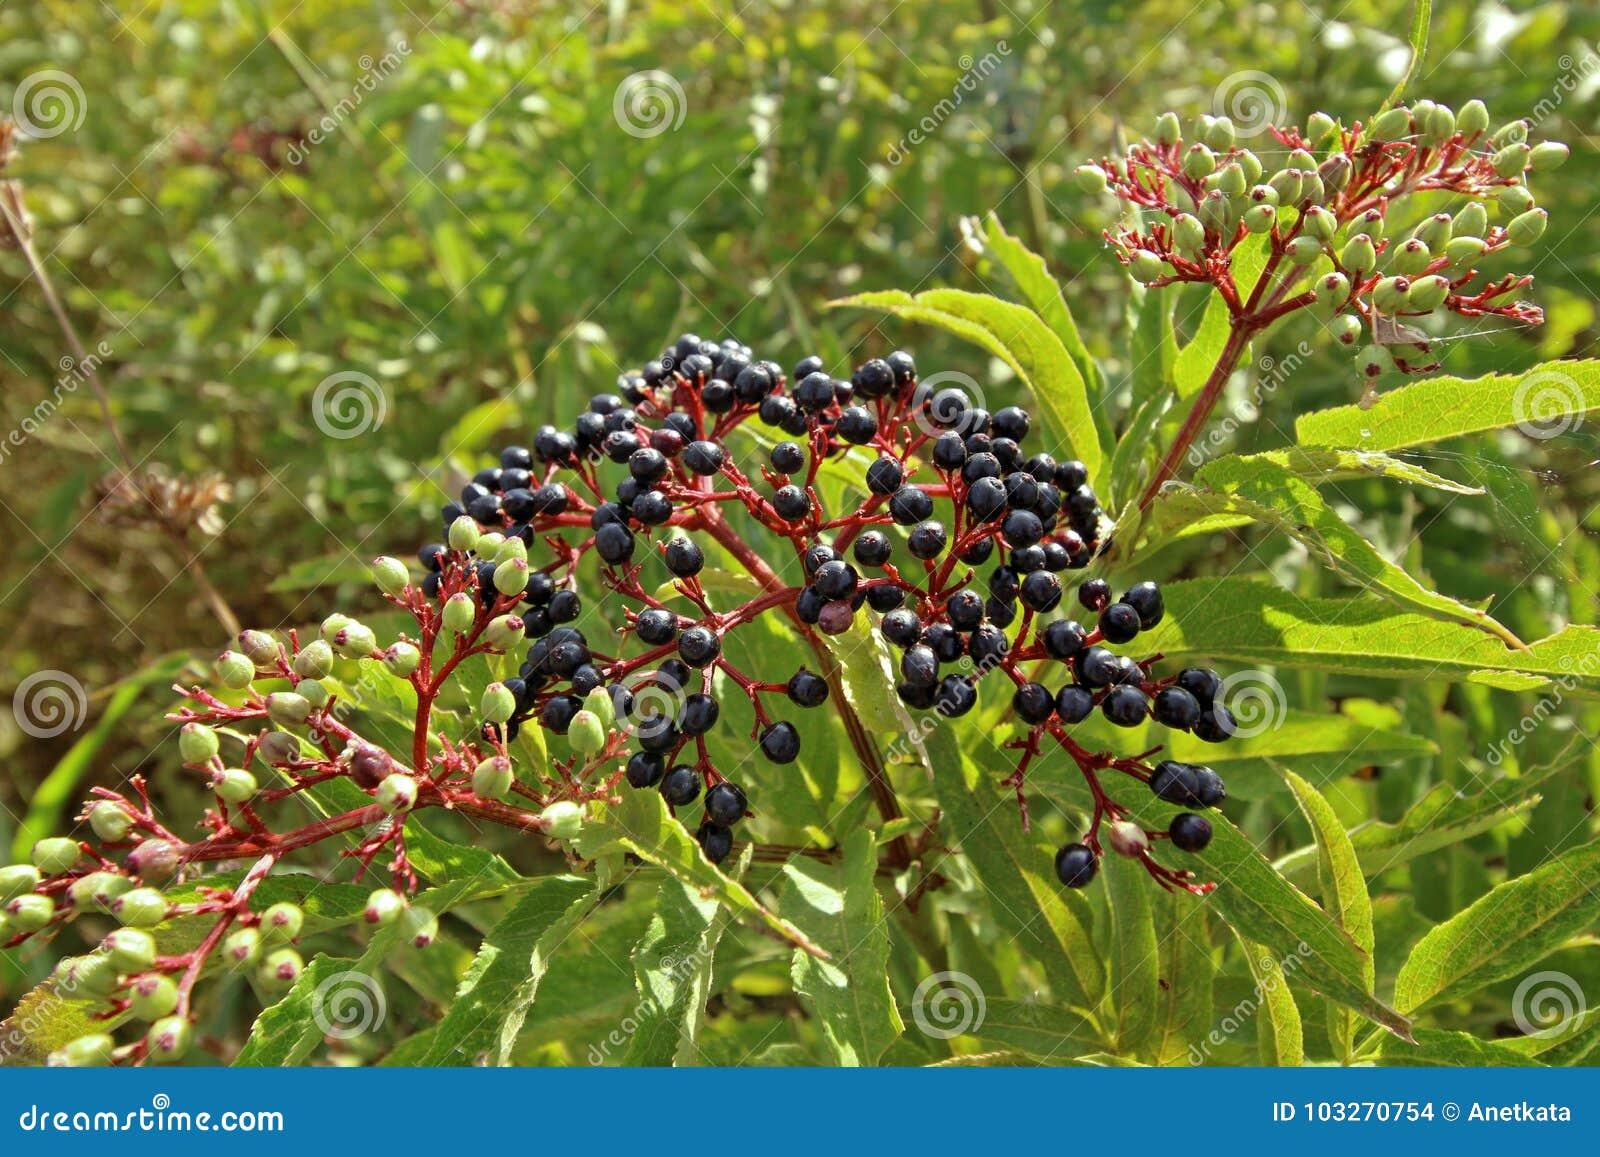 sambucus nigra fruits close up